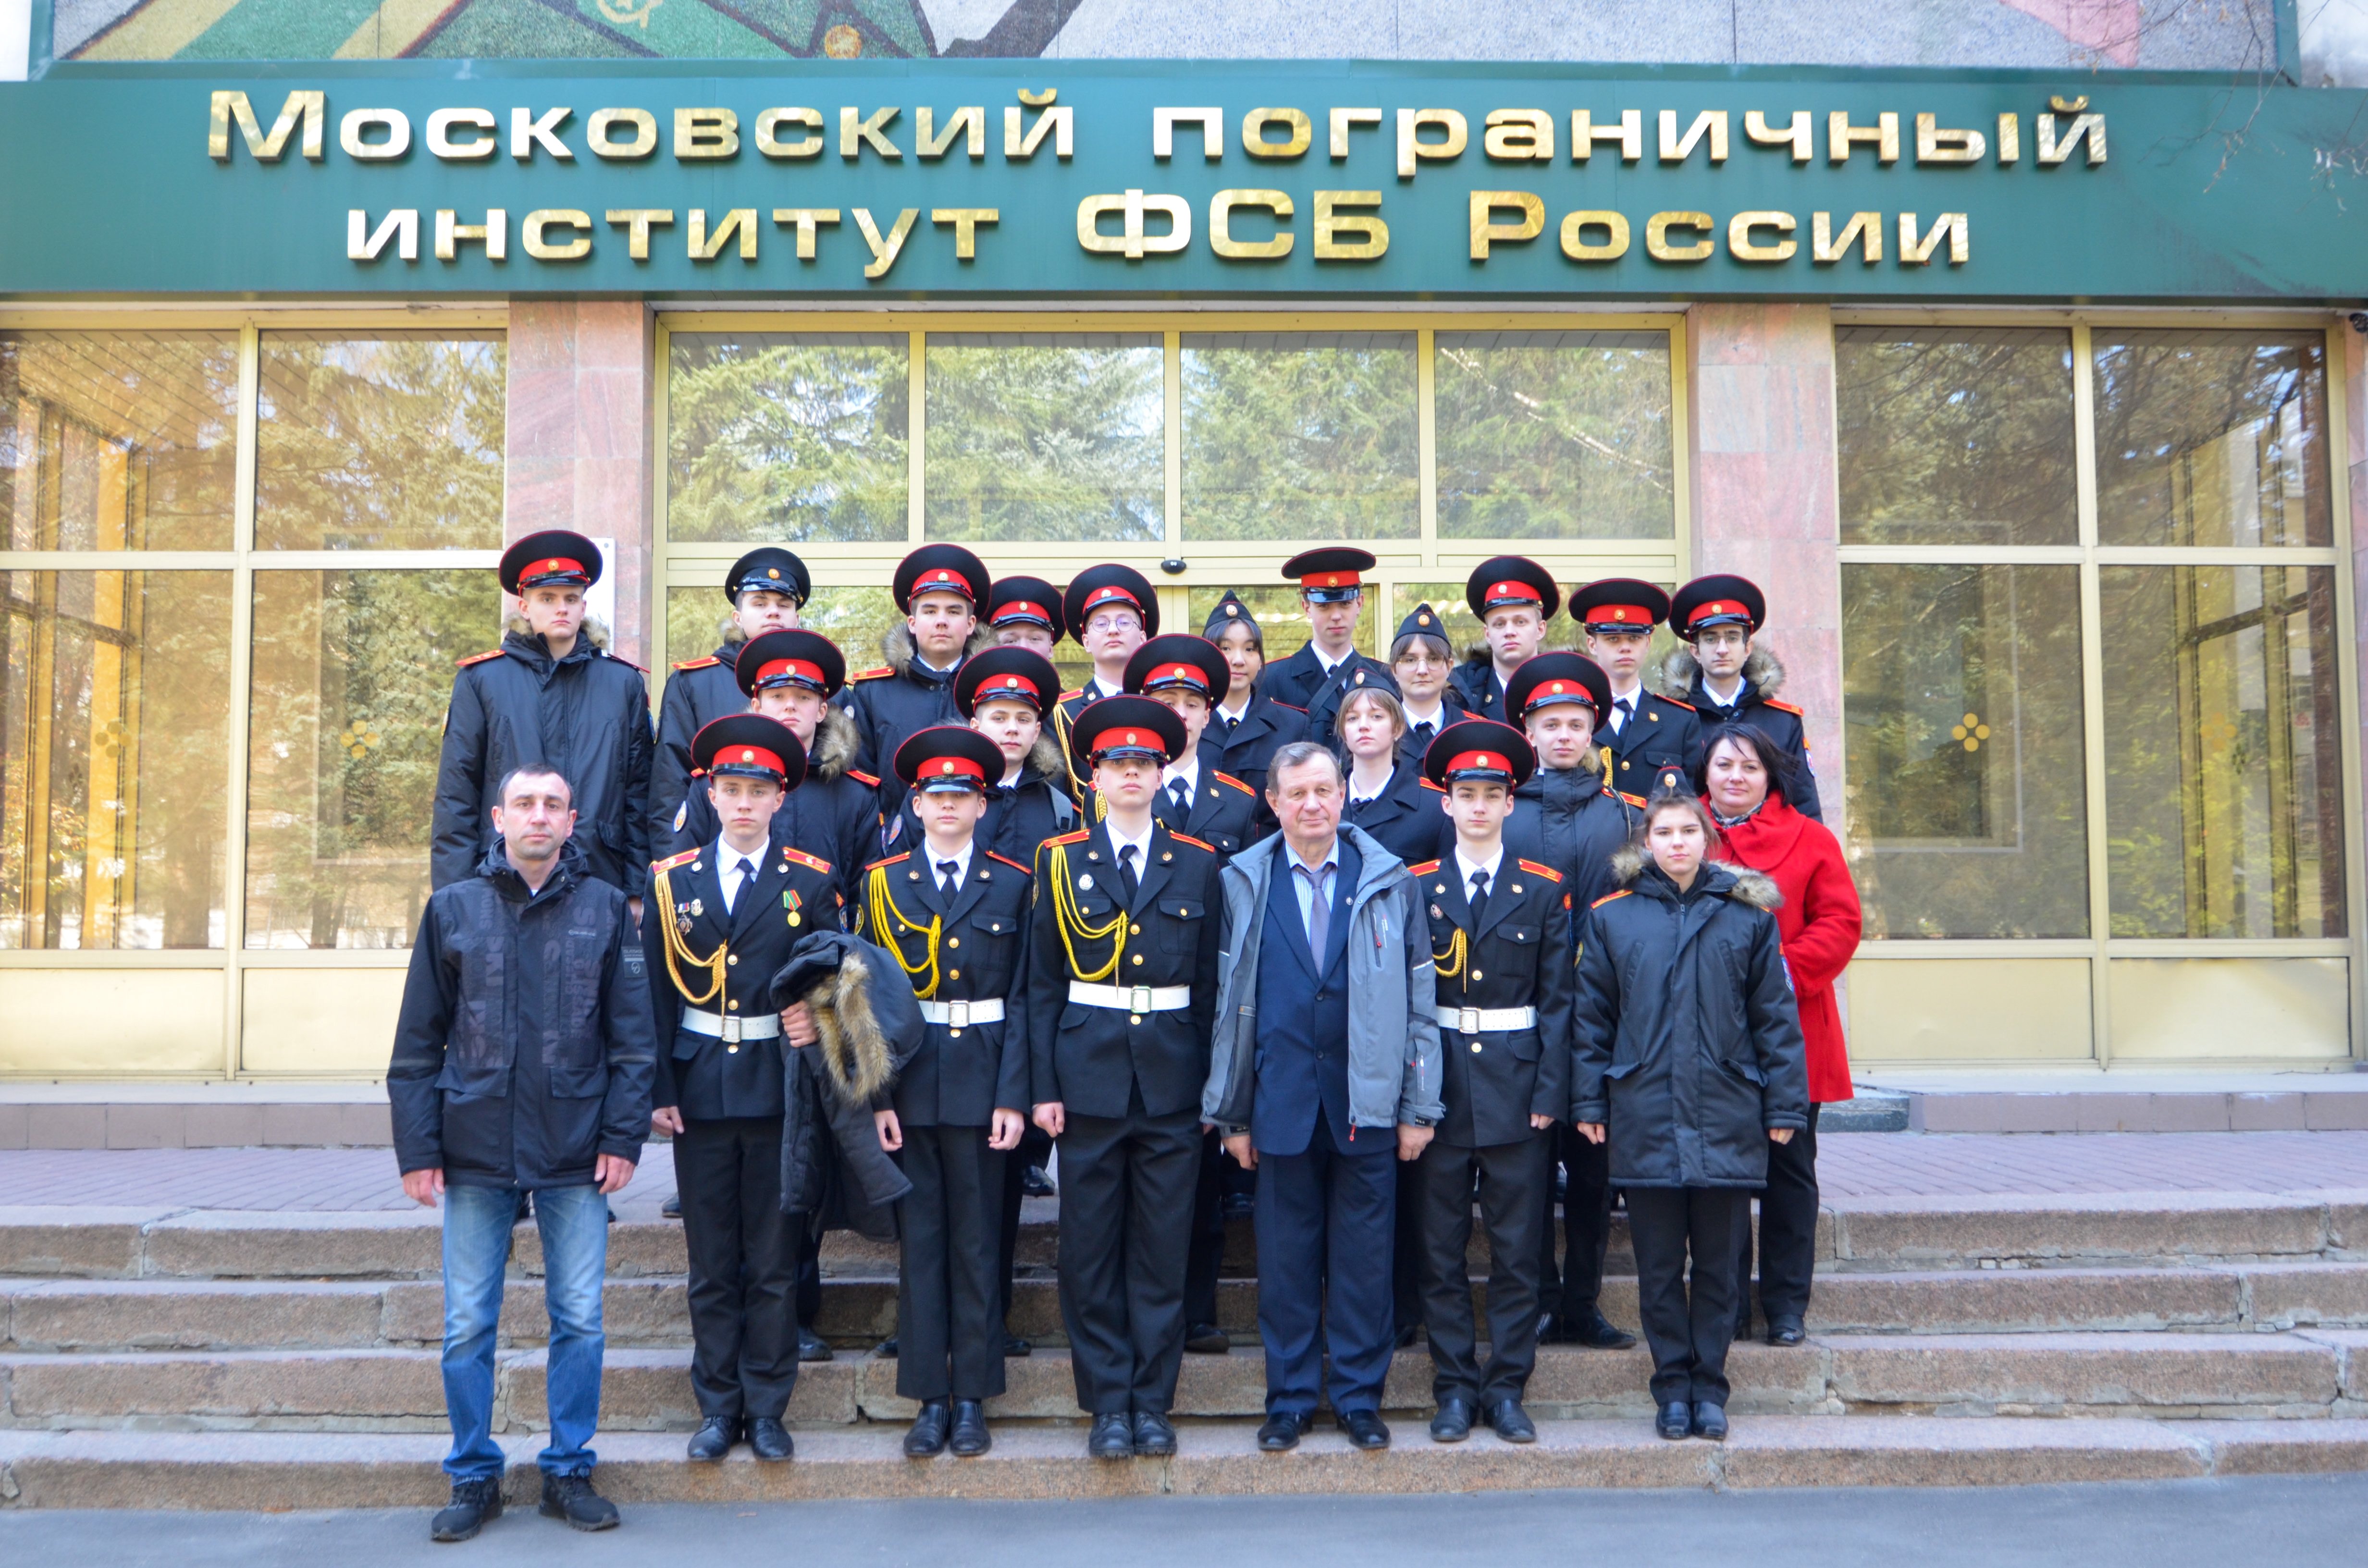 пограничный институт фсб в москве